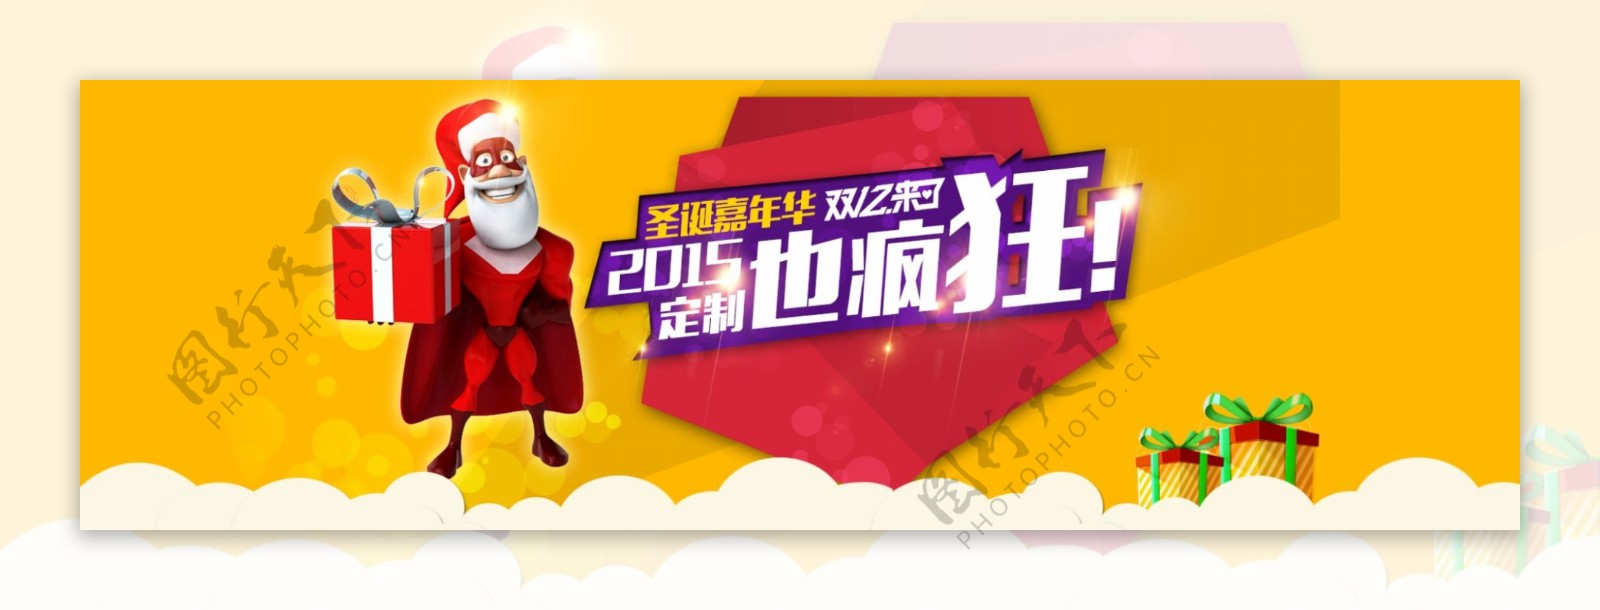 淘宝2015圣诞节活动专题页面海报